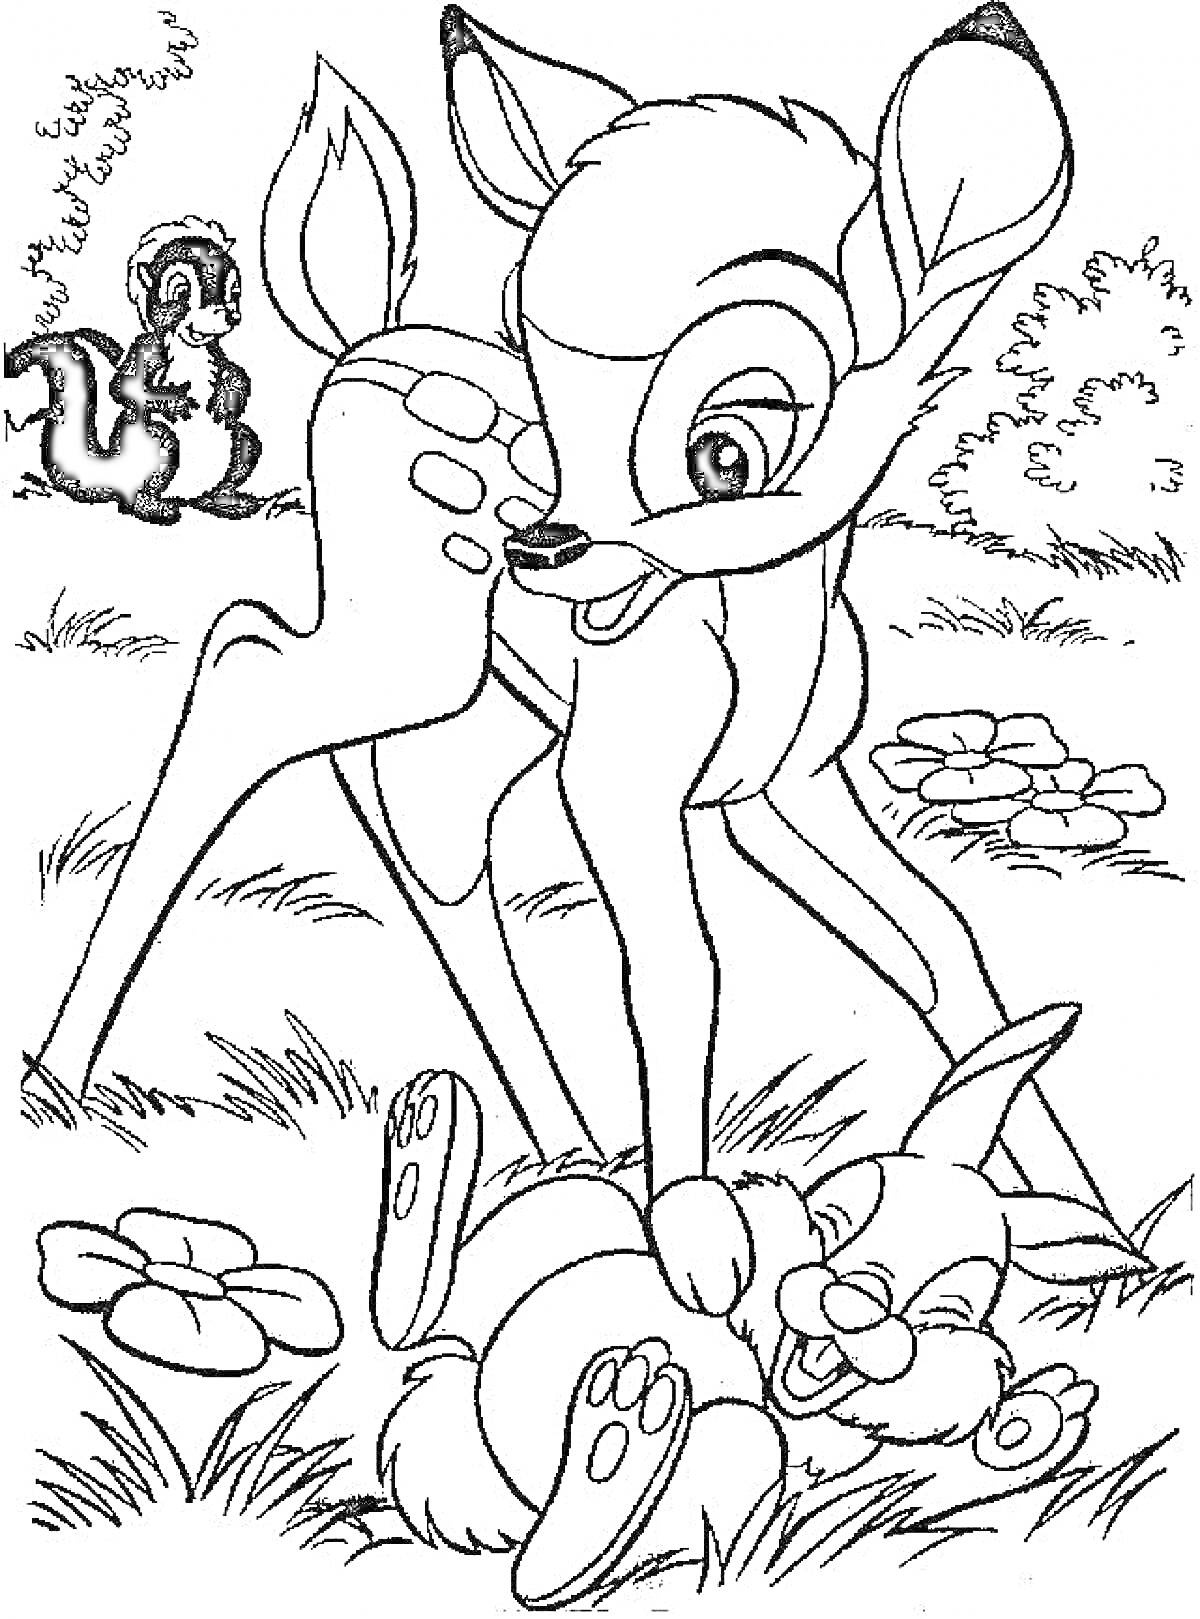 РаскраскаБэмби с другом зайцем и смотрящим на них скунсом на лугу с цветами